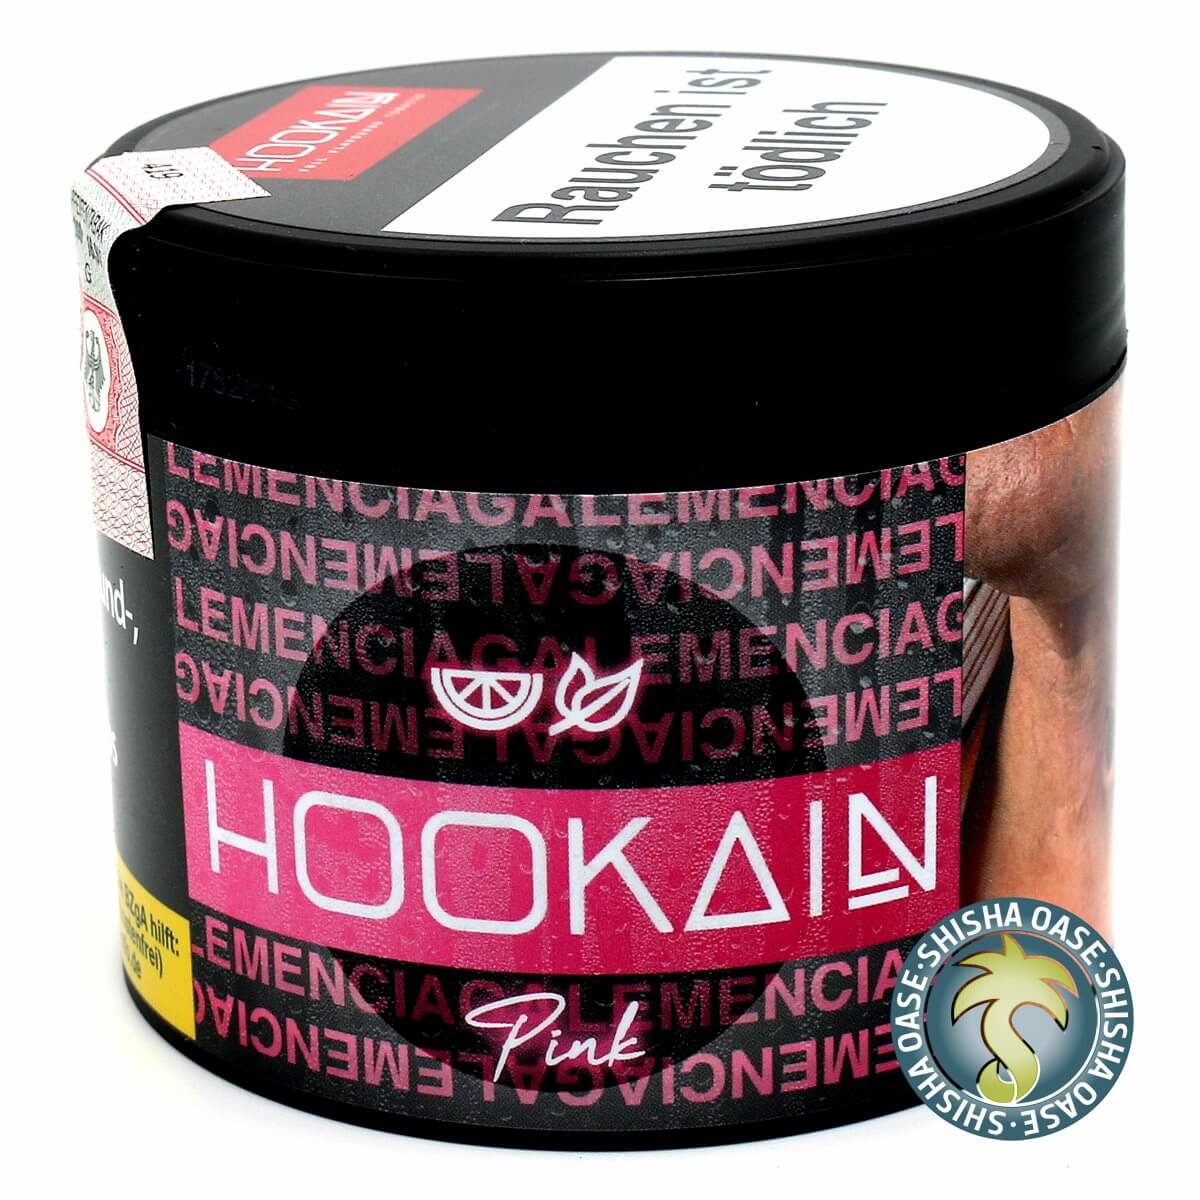 Hookain Tabak Pink Lemenciaga 200g